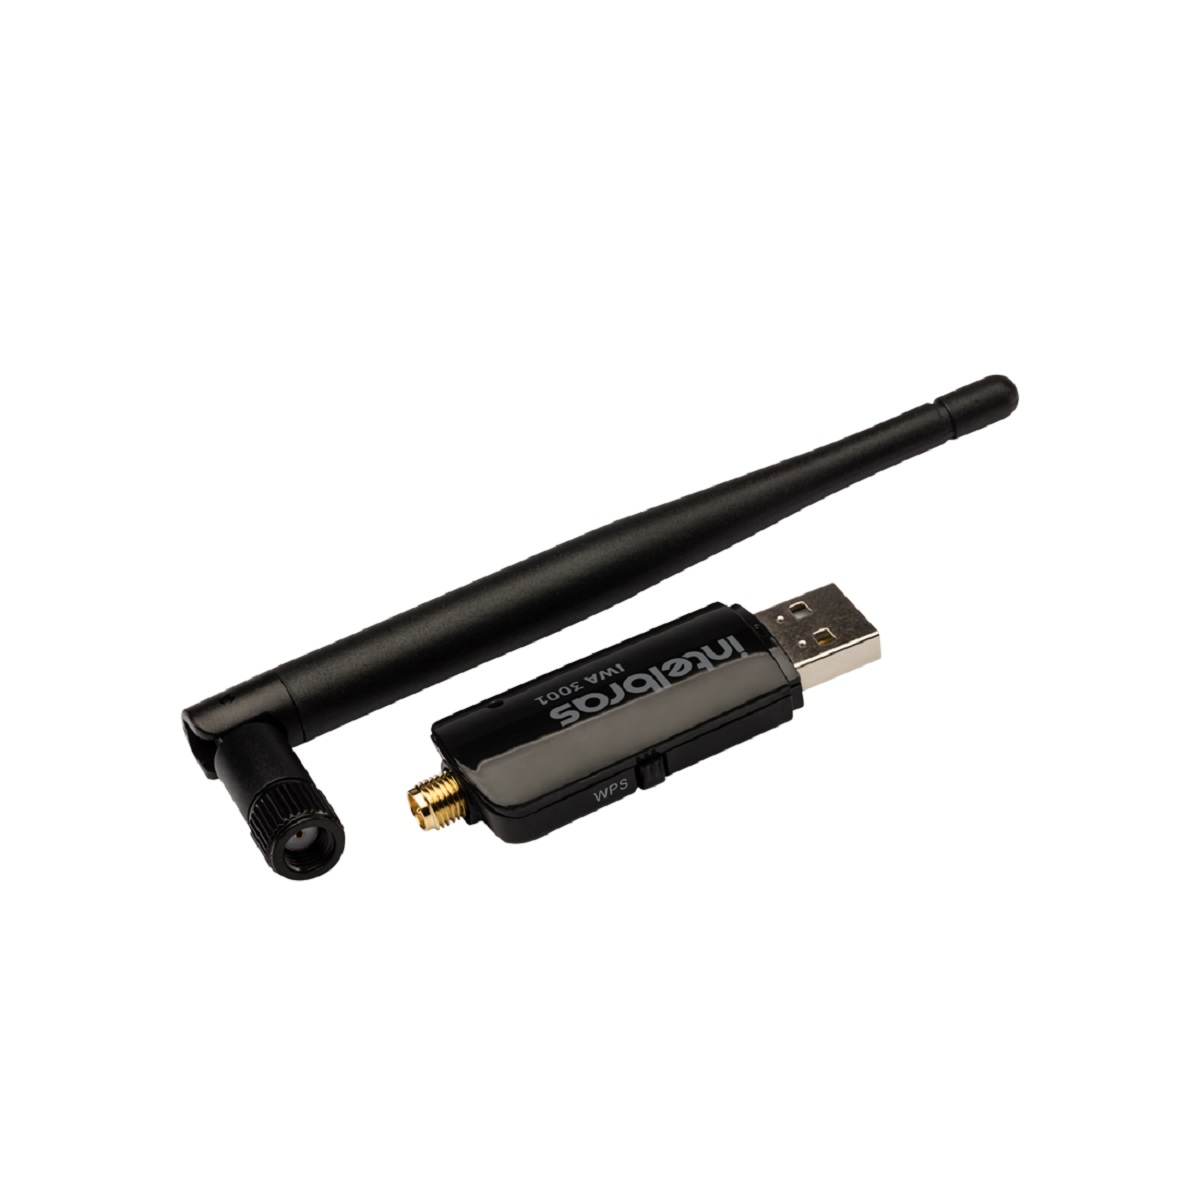 IWA 3001 - Adaptador USB Wireless